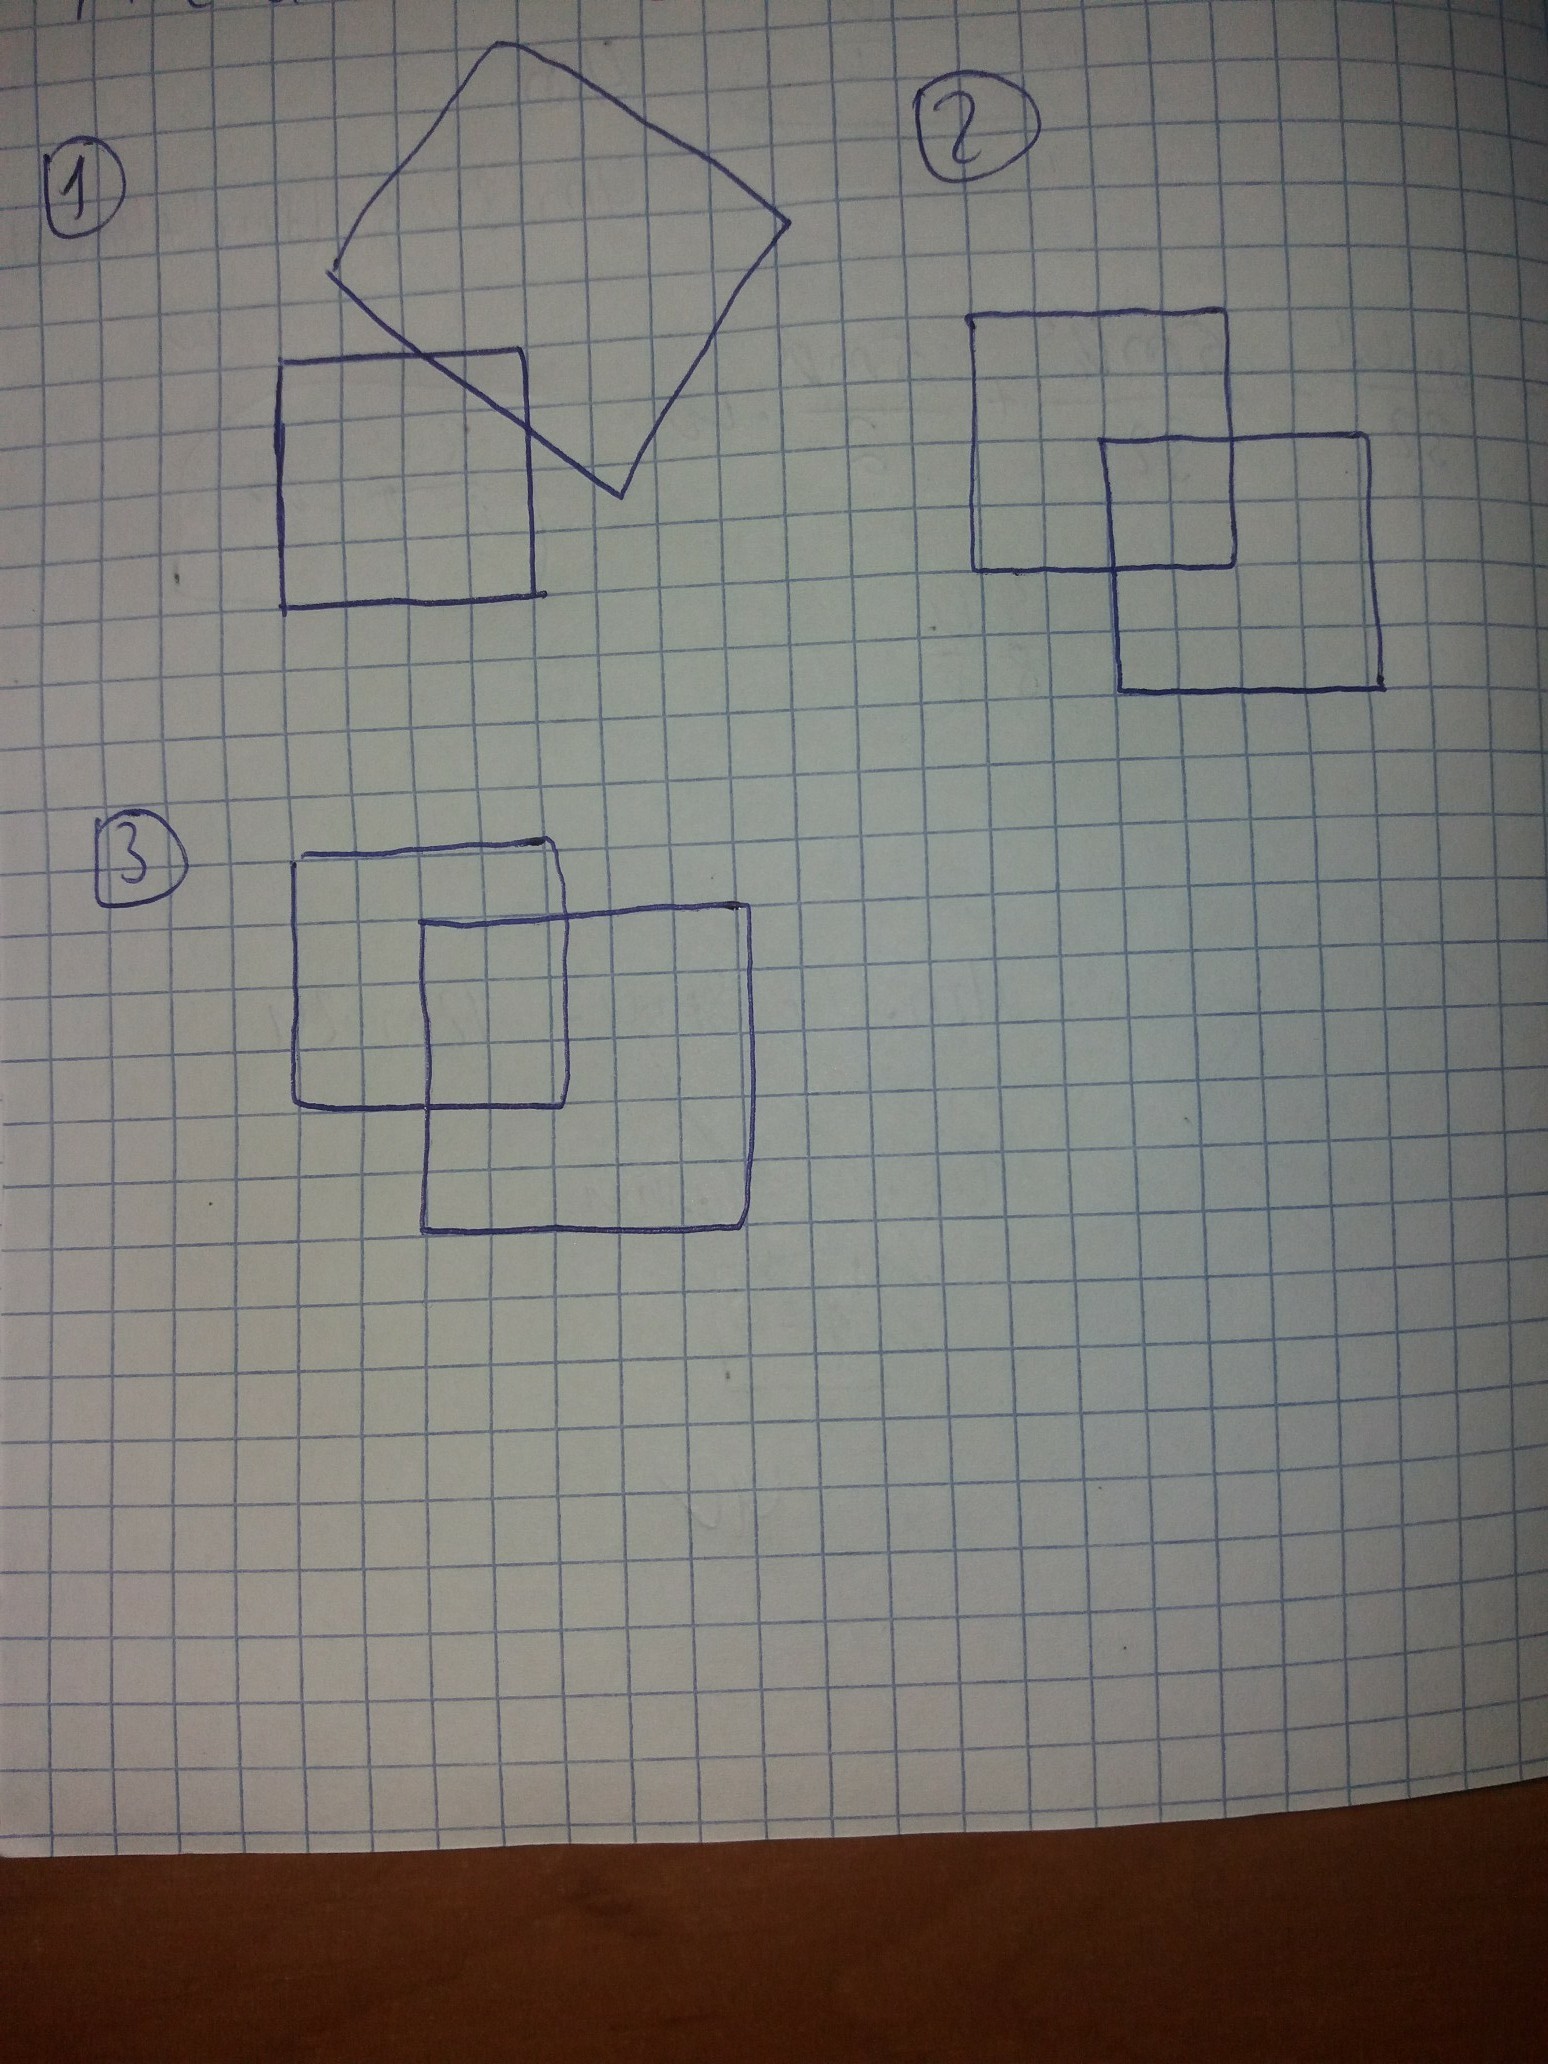 картинки фигур прямоугольника квадрата и четырехугольника